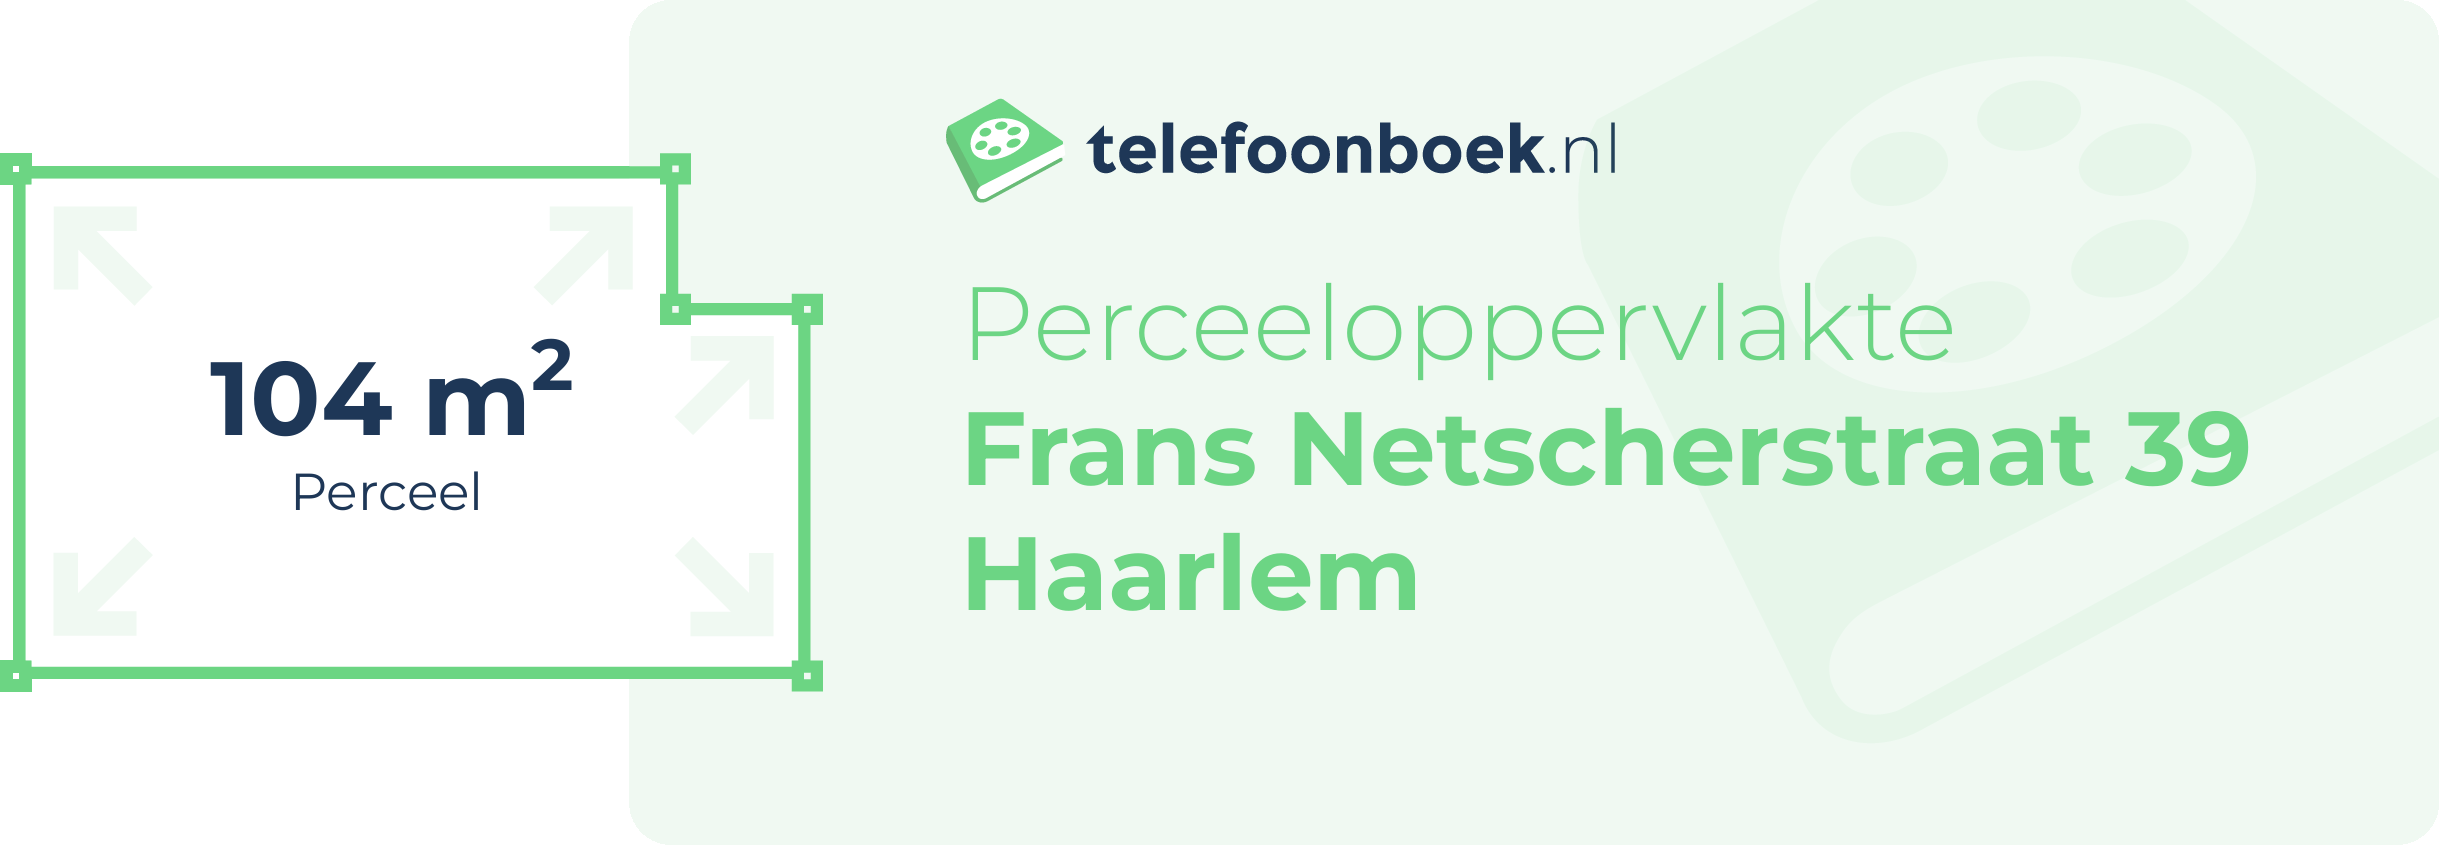 Perceeloppervlakte Frans Netscherstraat 39 Haarlem